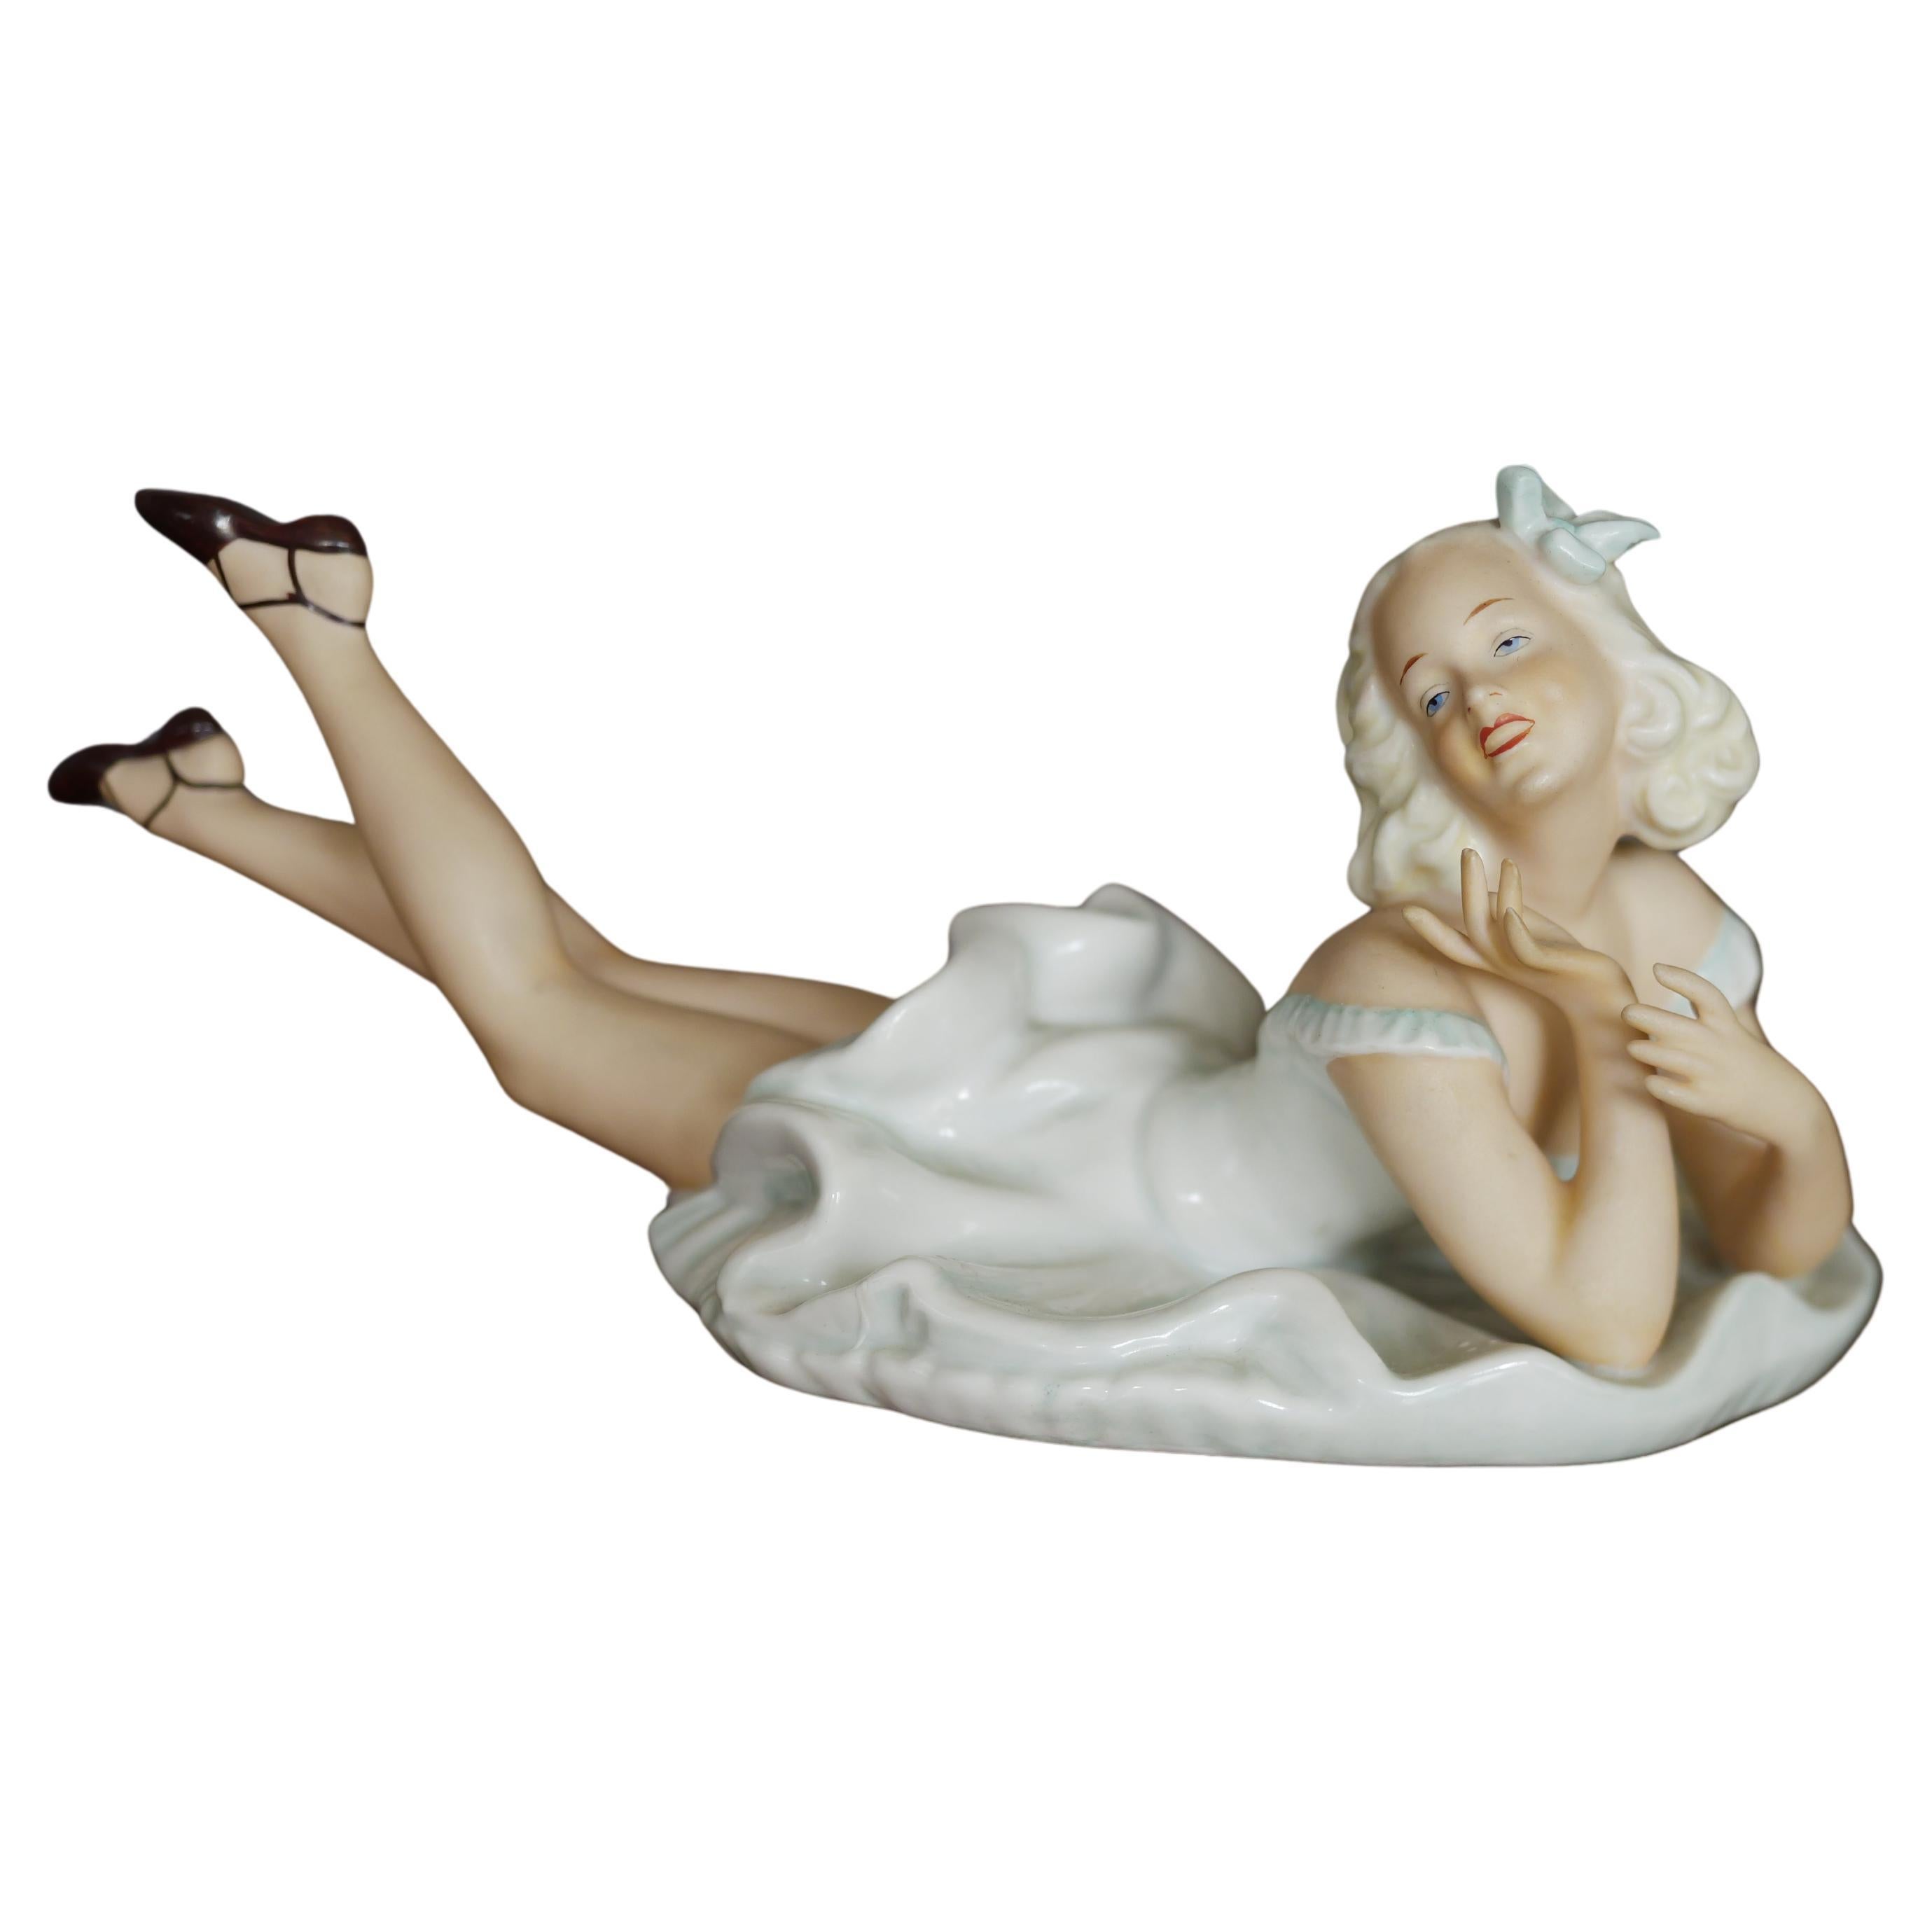 Vintage laying lady porcelain figure original Schaubach Kunst art sculpture 